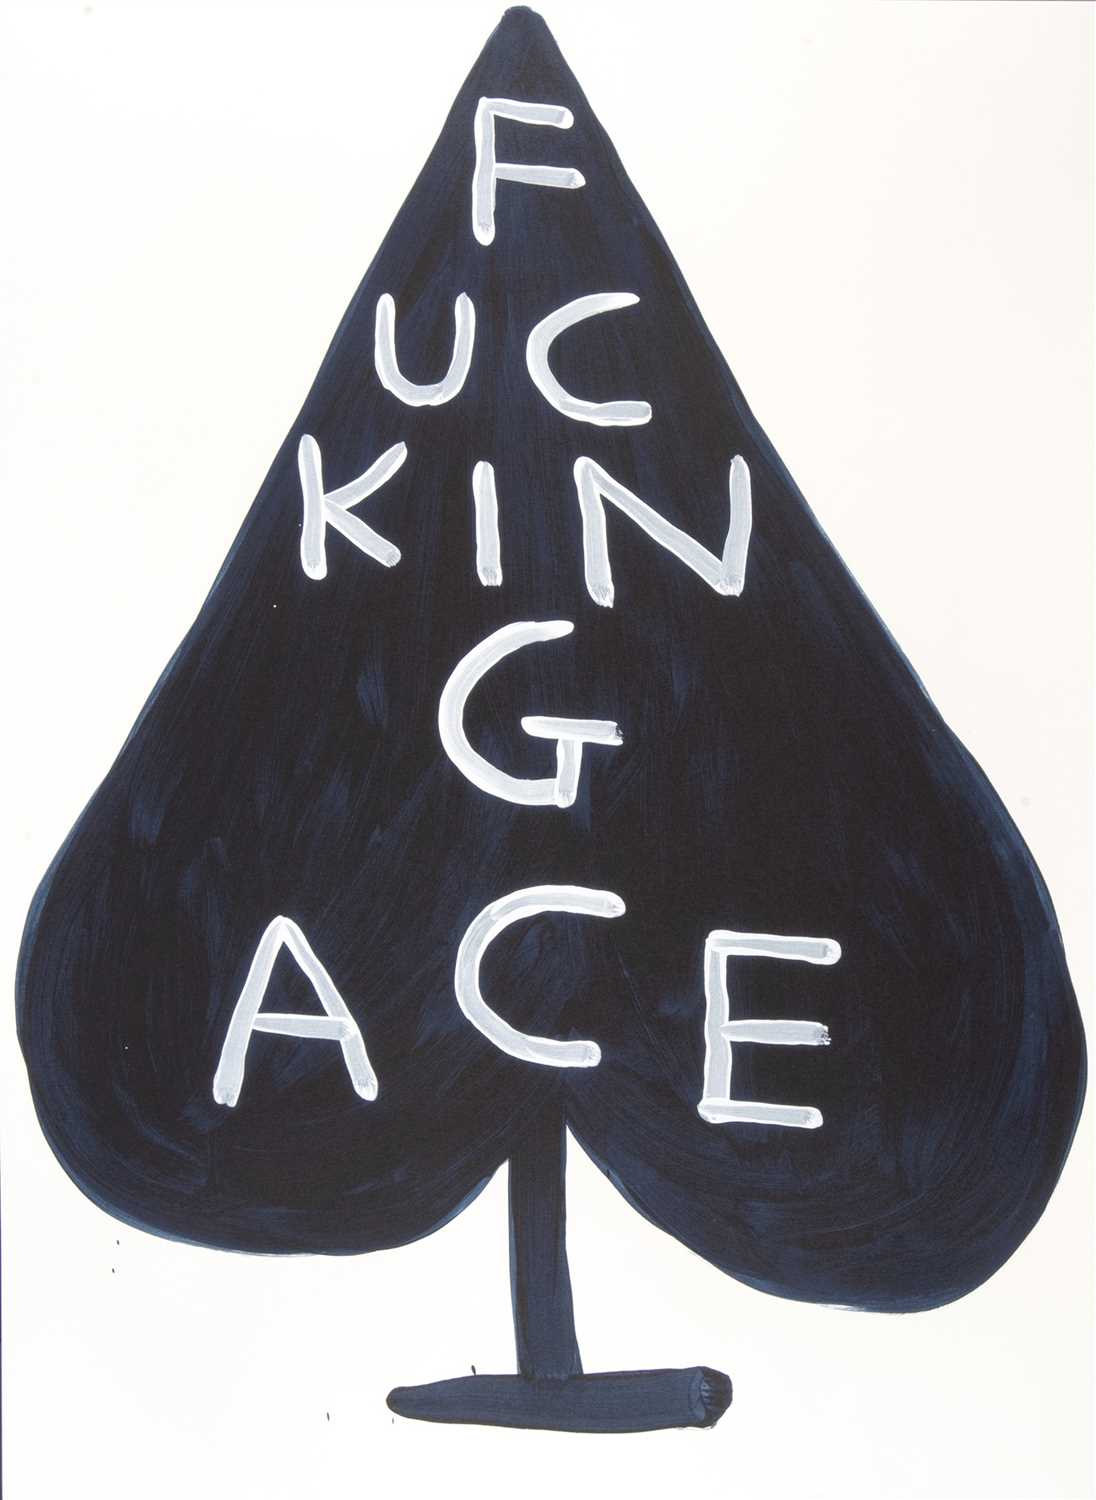 Lot 257 - David Shrigley (British b.1968), ‘Fucking Ace’, 2018